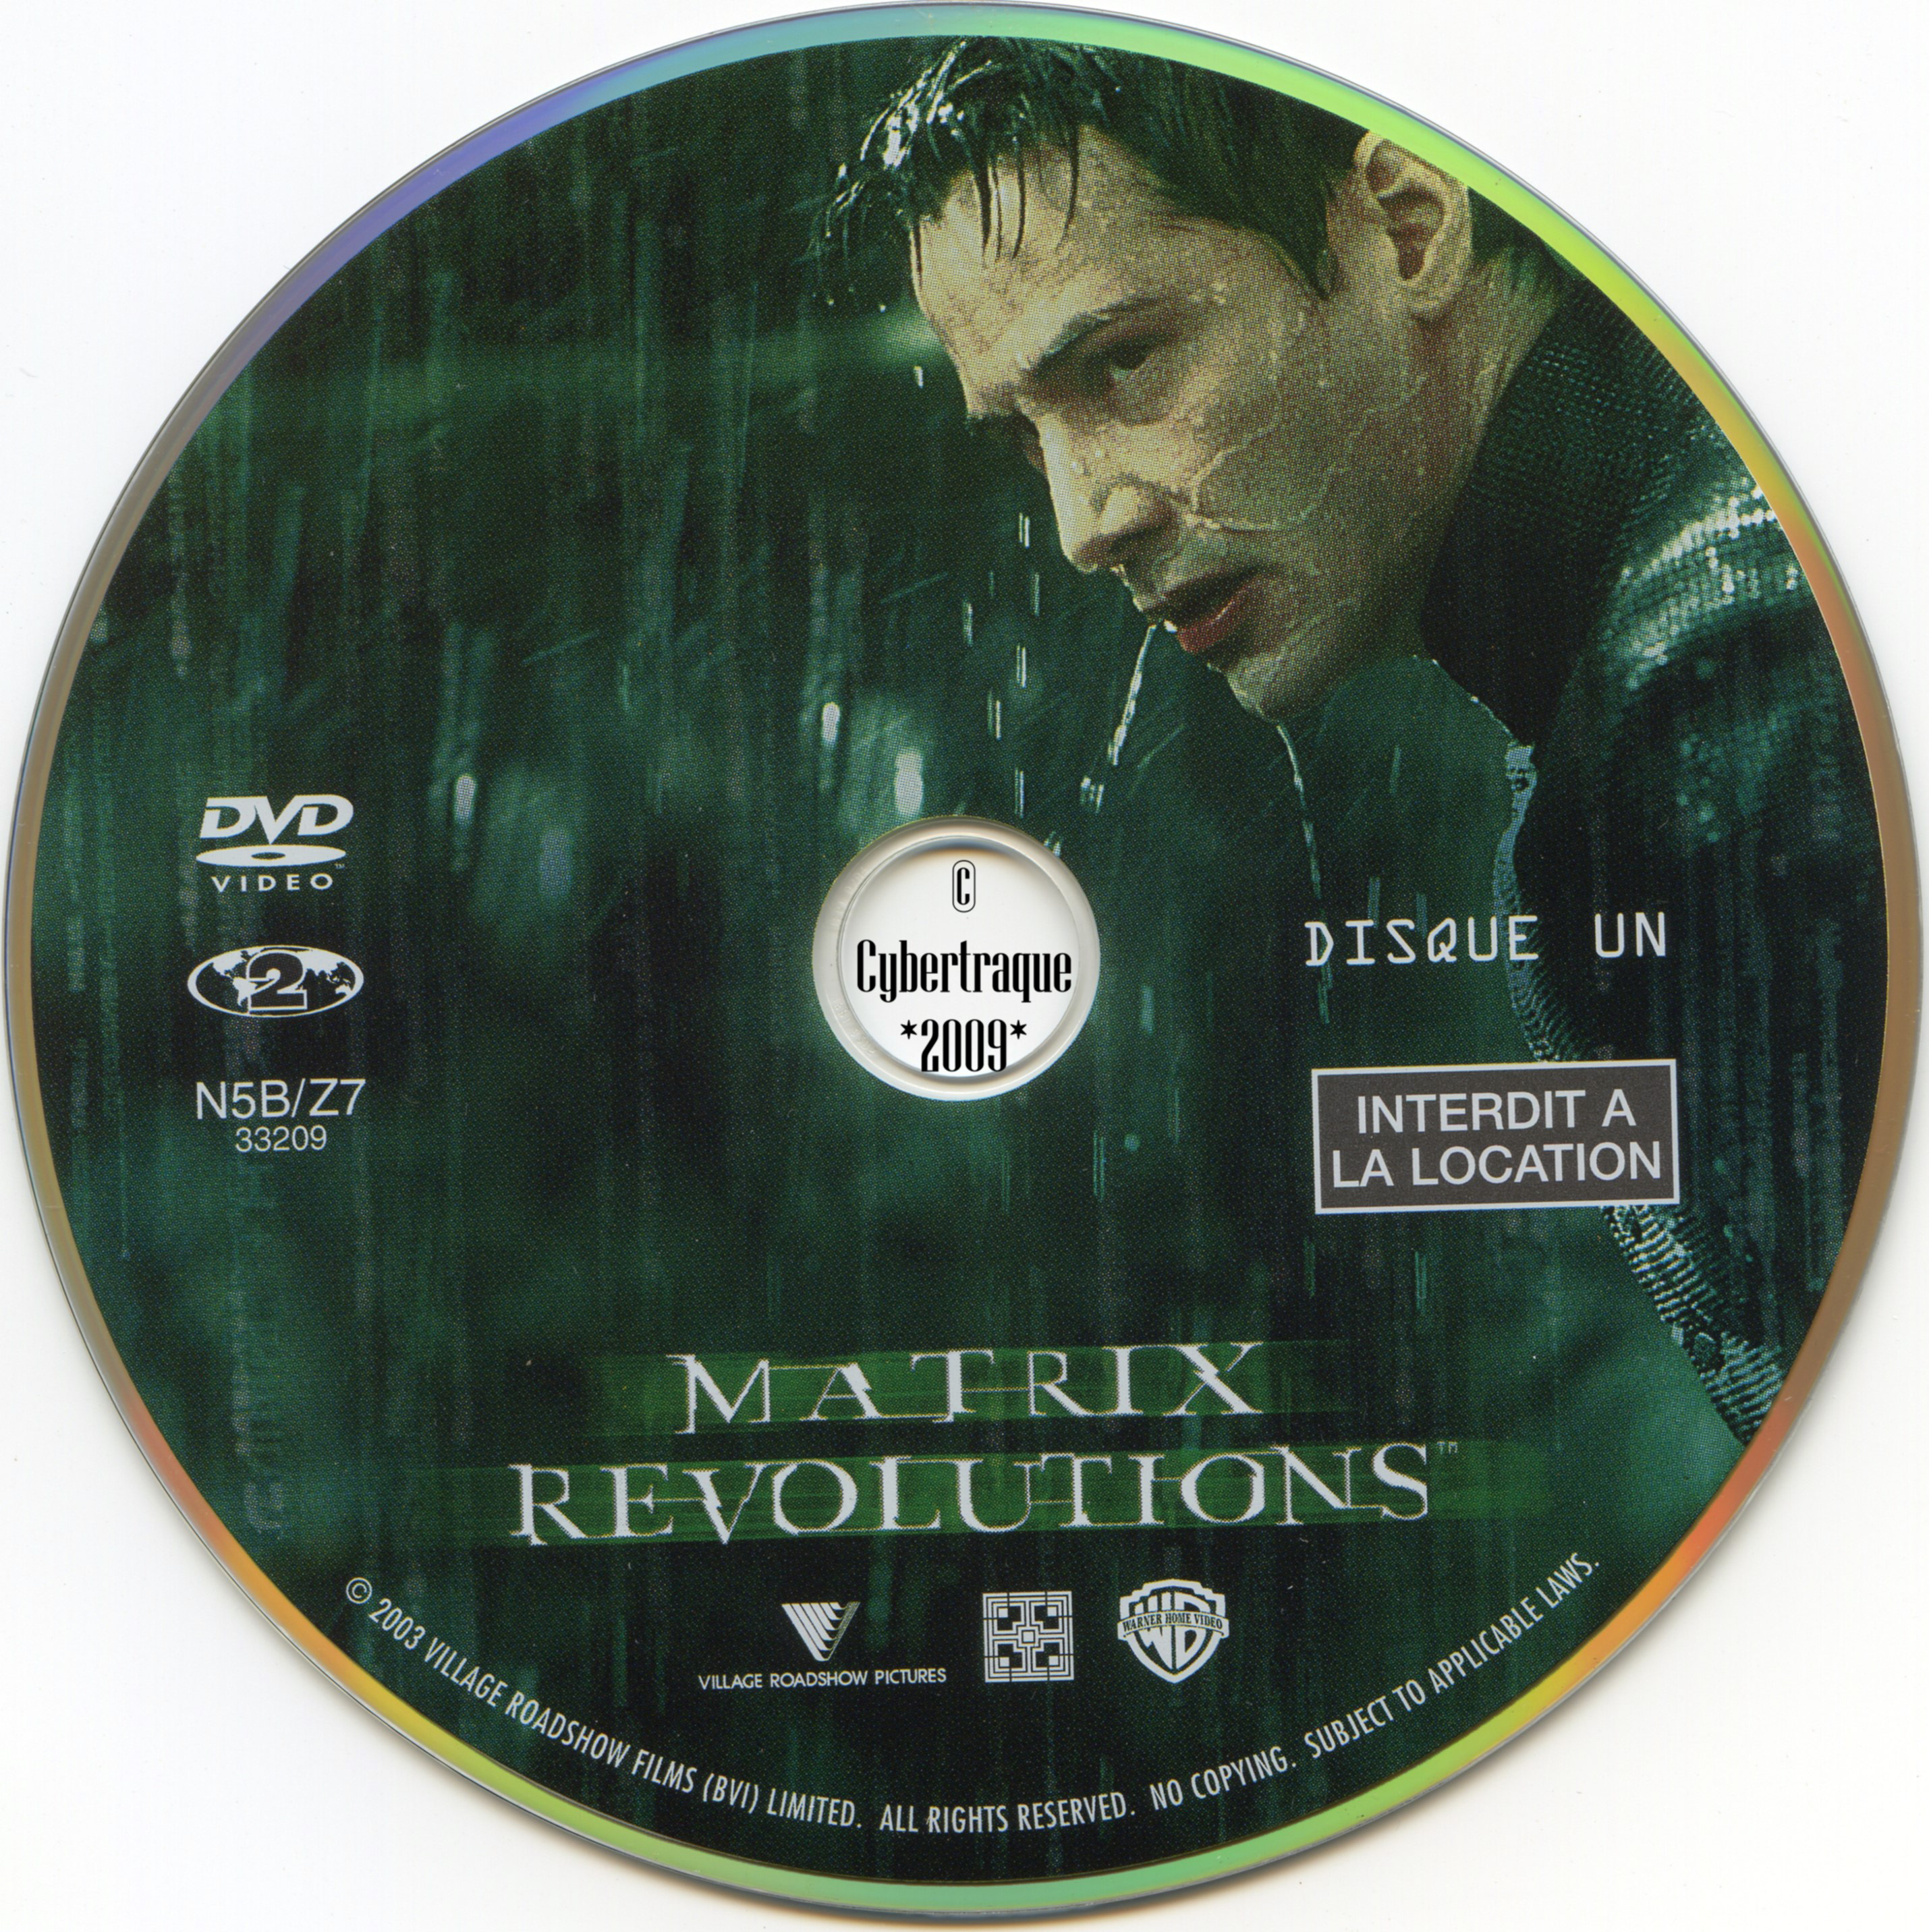 Matrix revolutions DISC 1